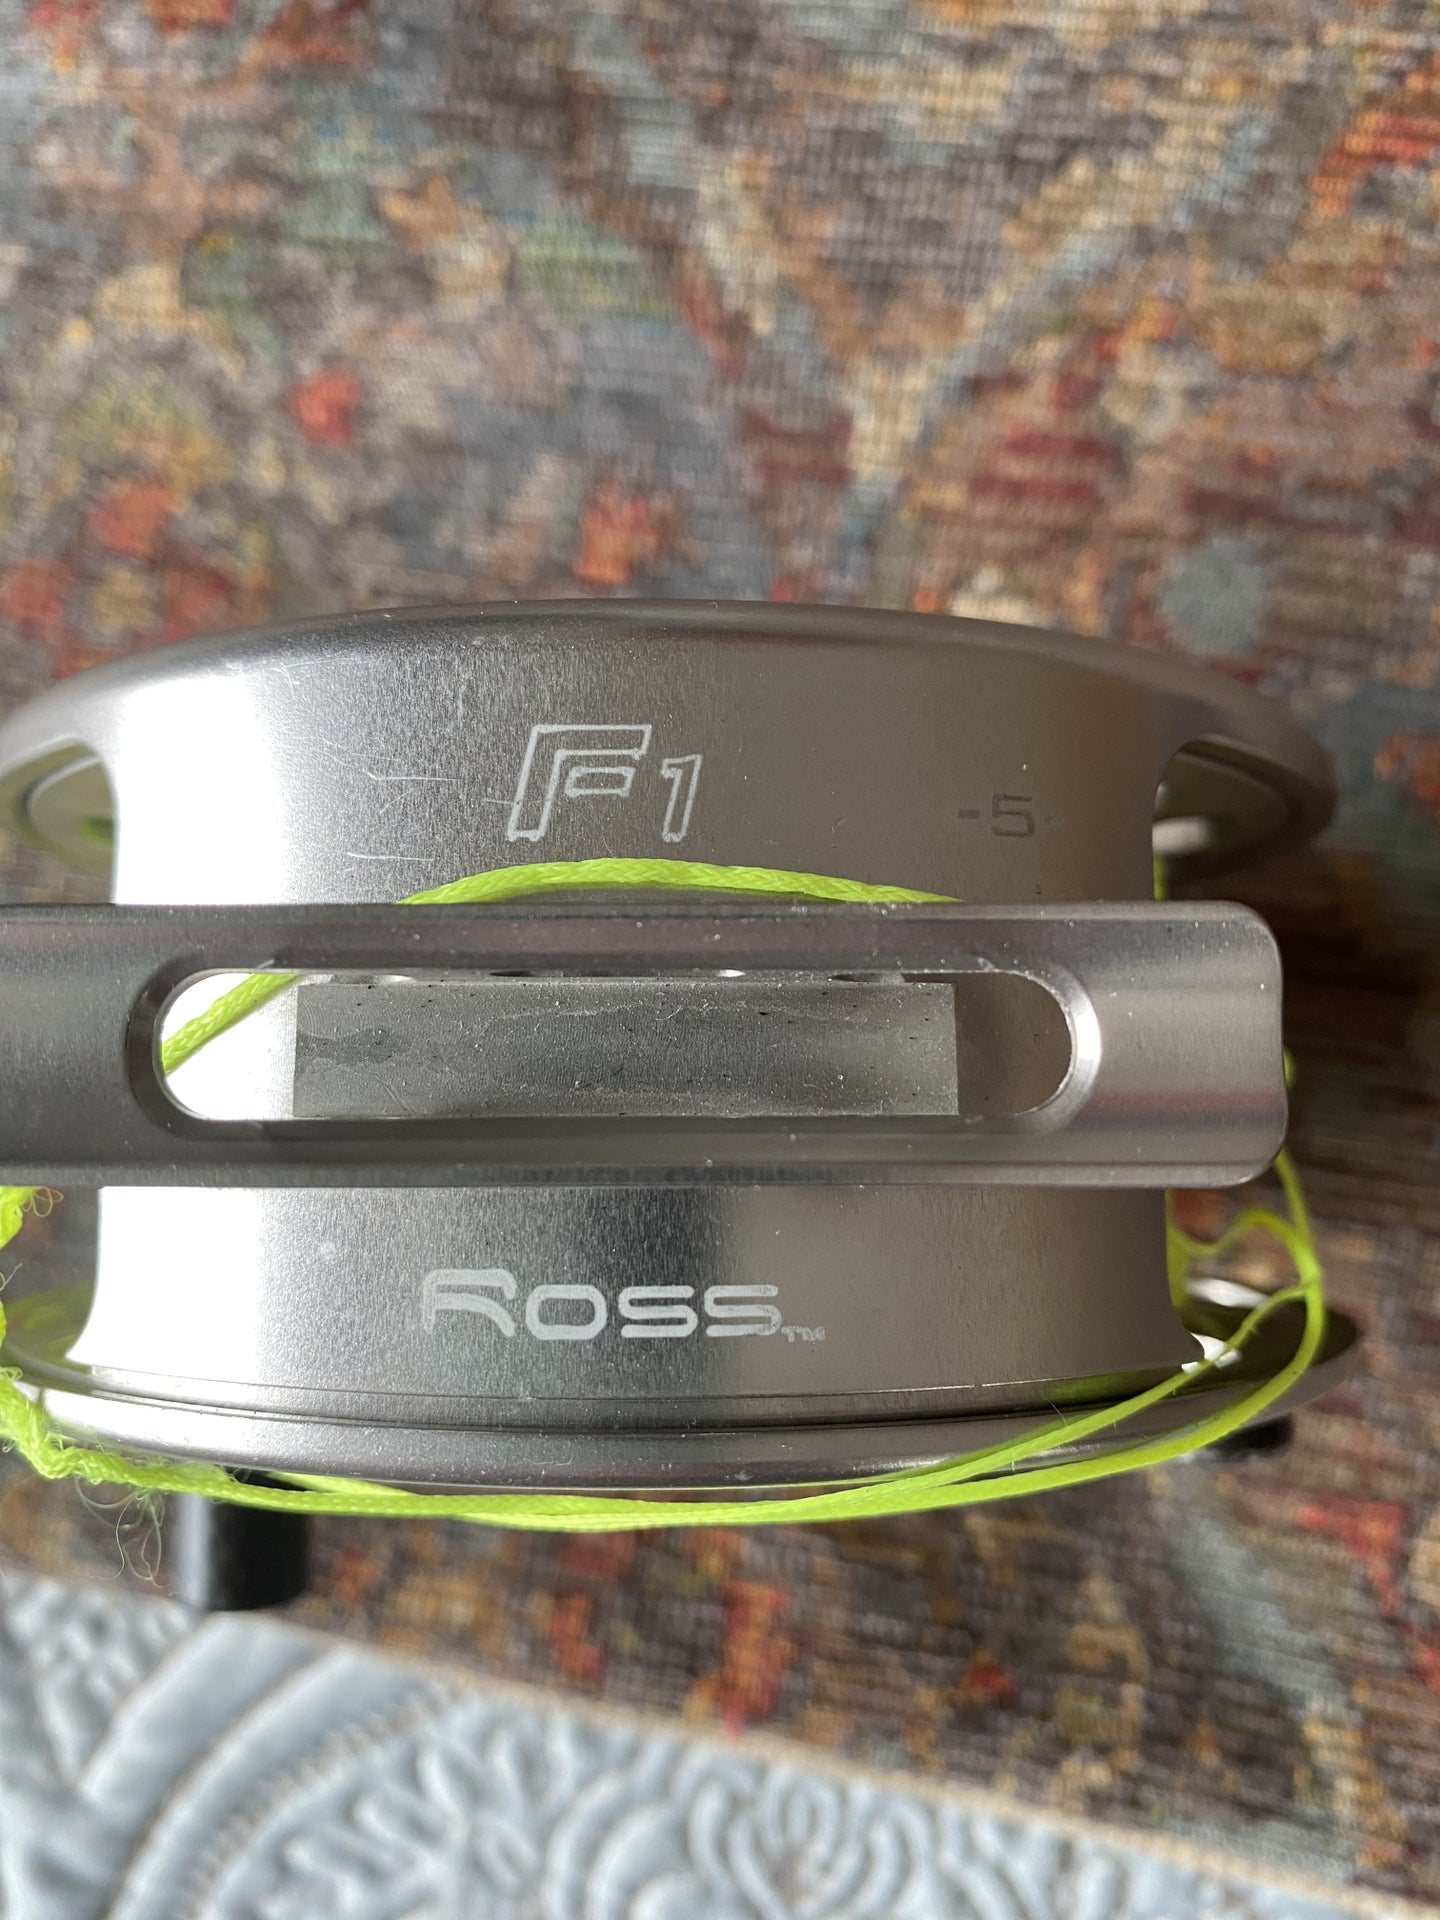 Ross F1 —5